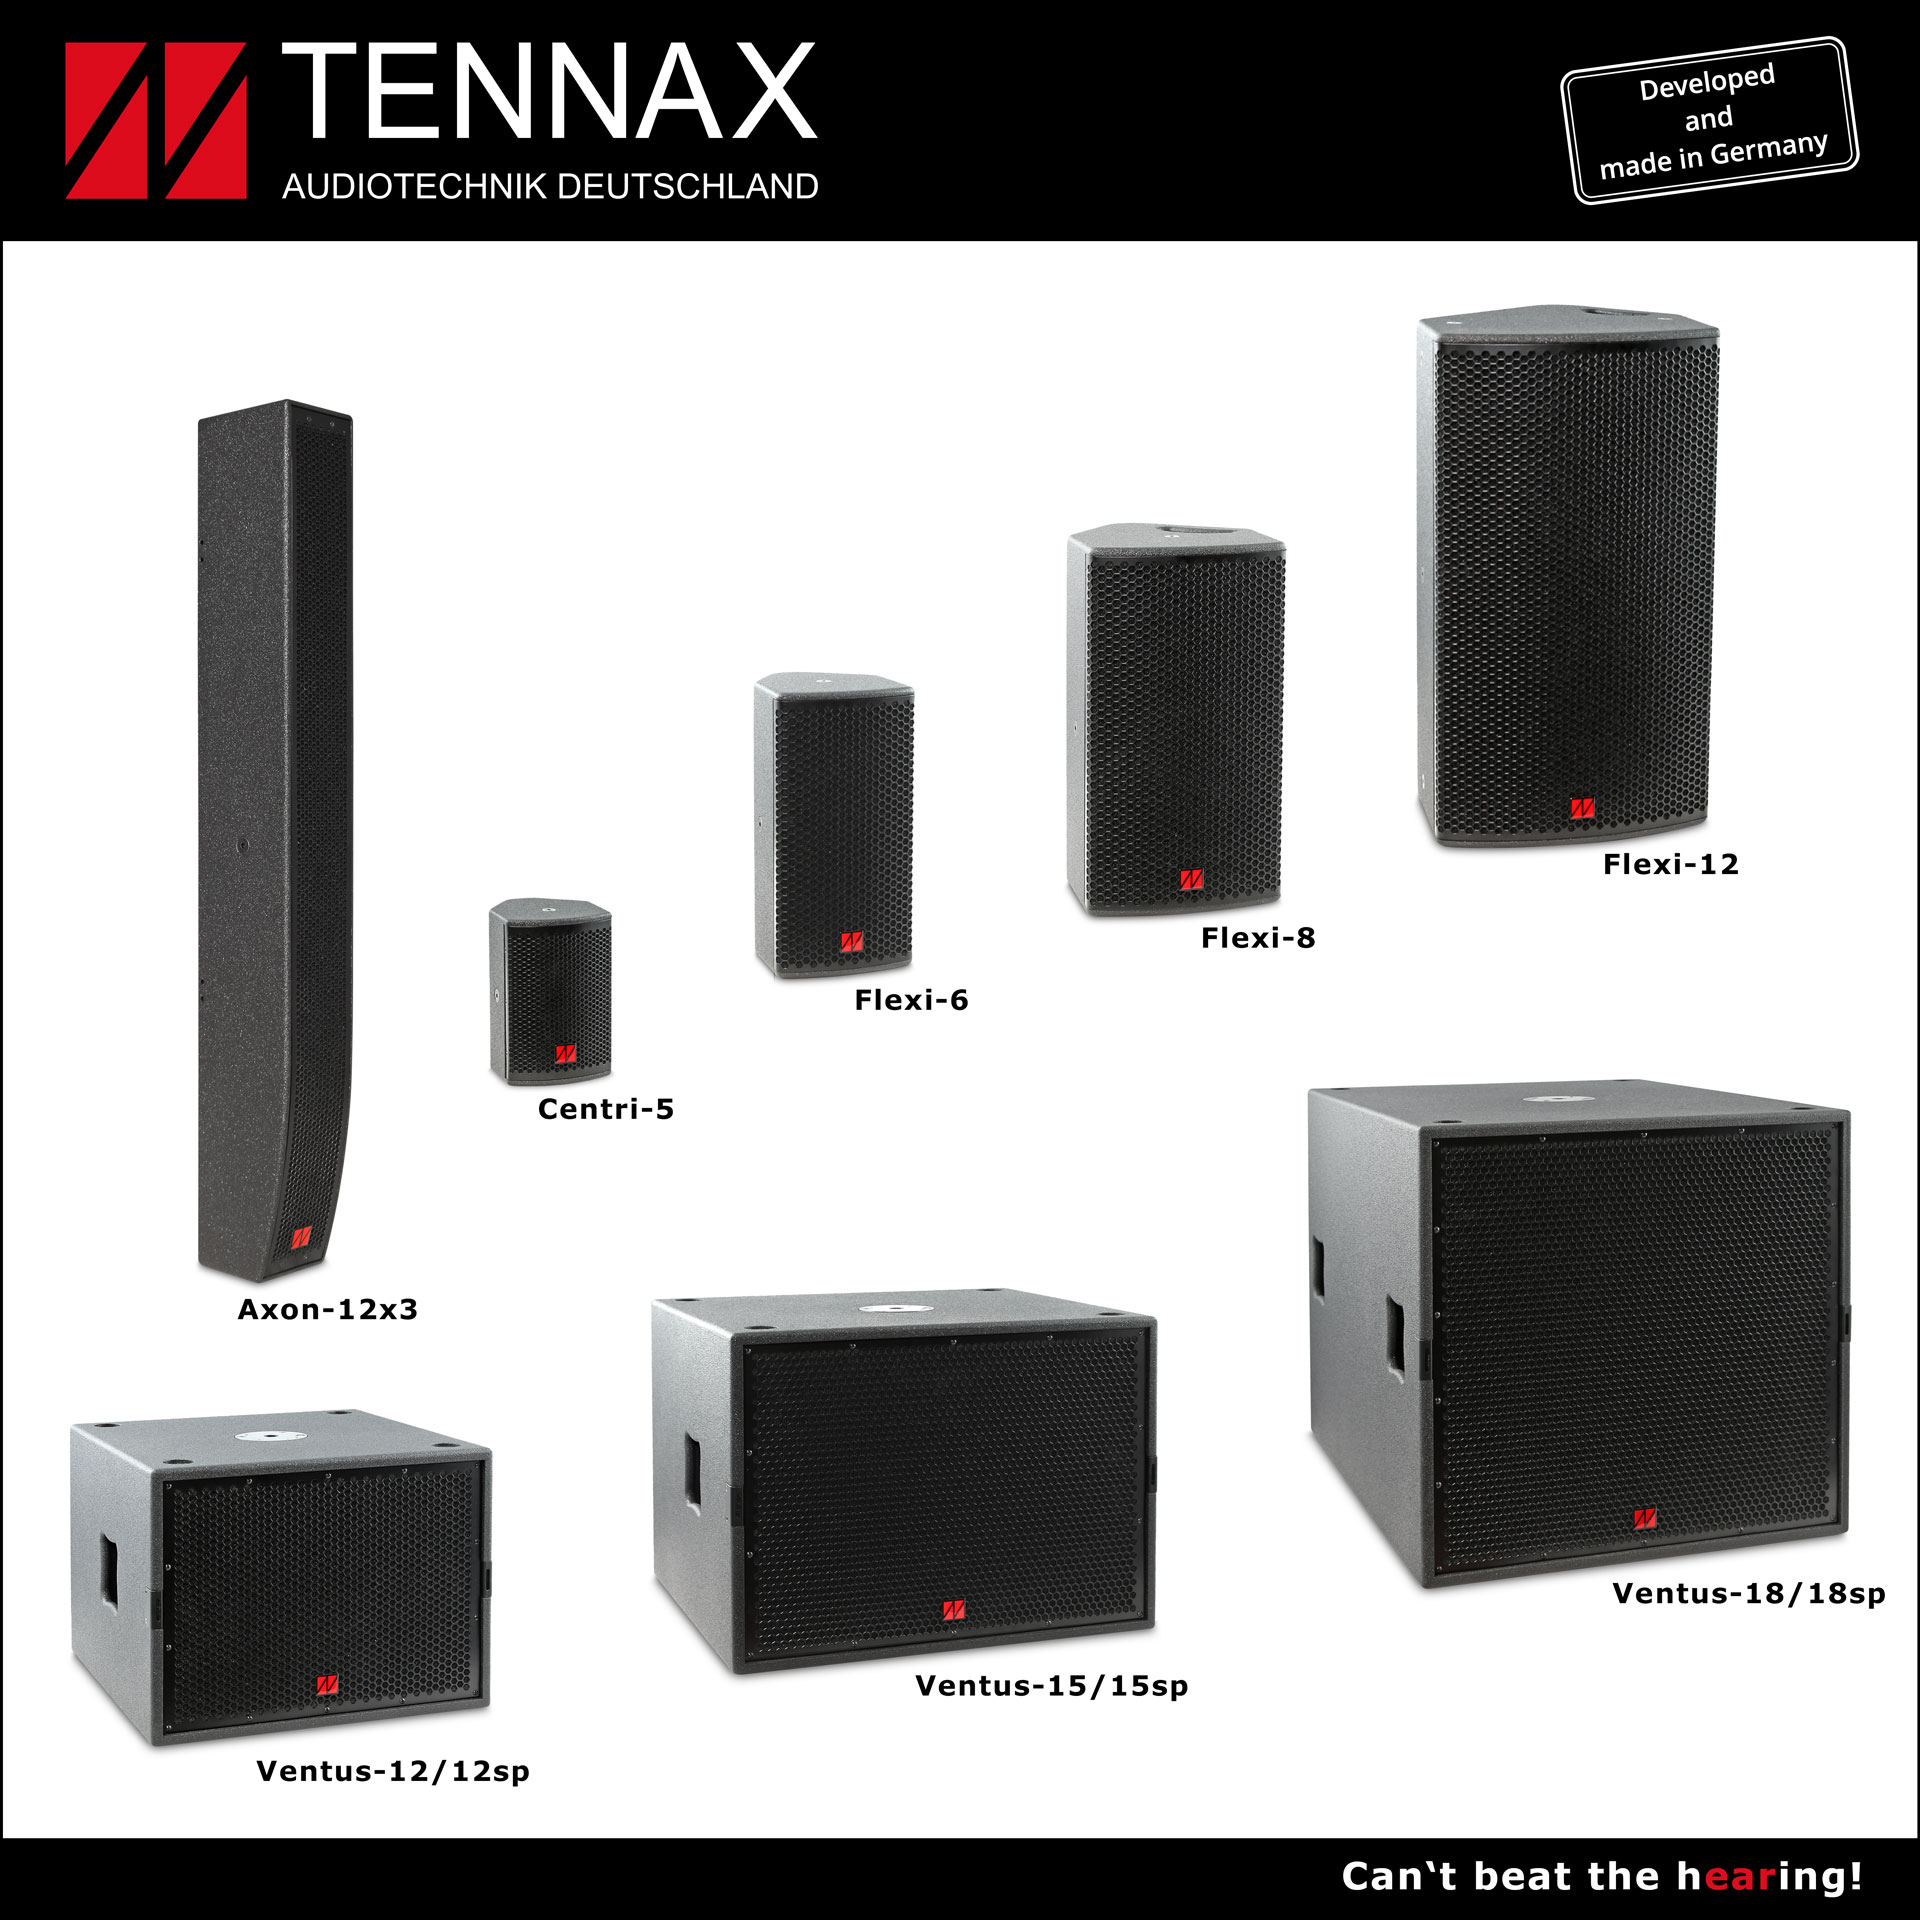 TENNAX Audiotechnik Deutschland production start